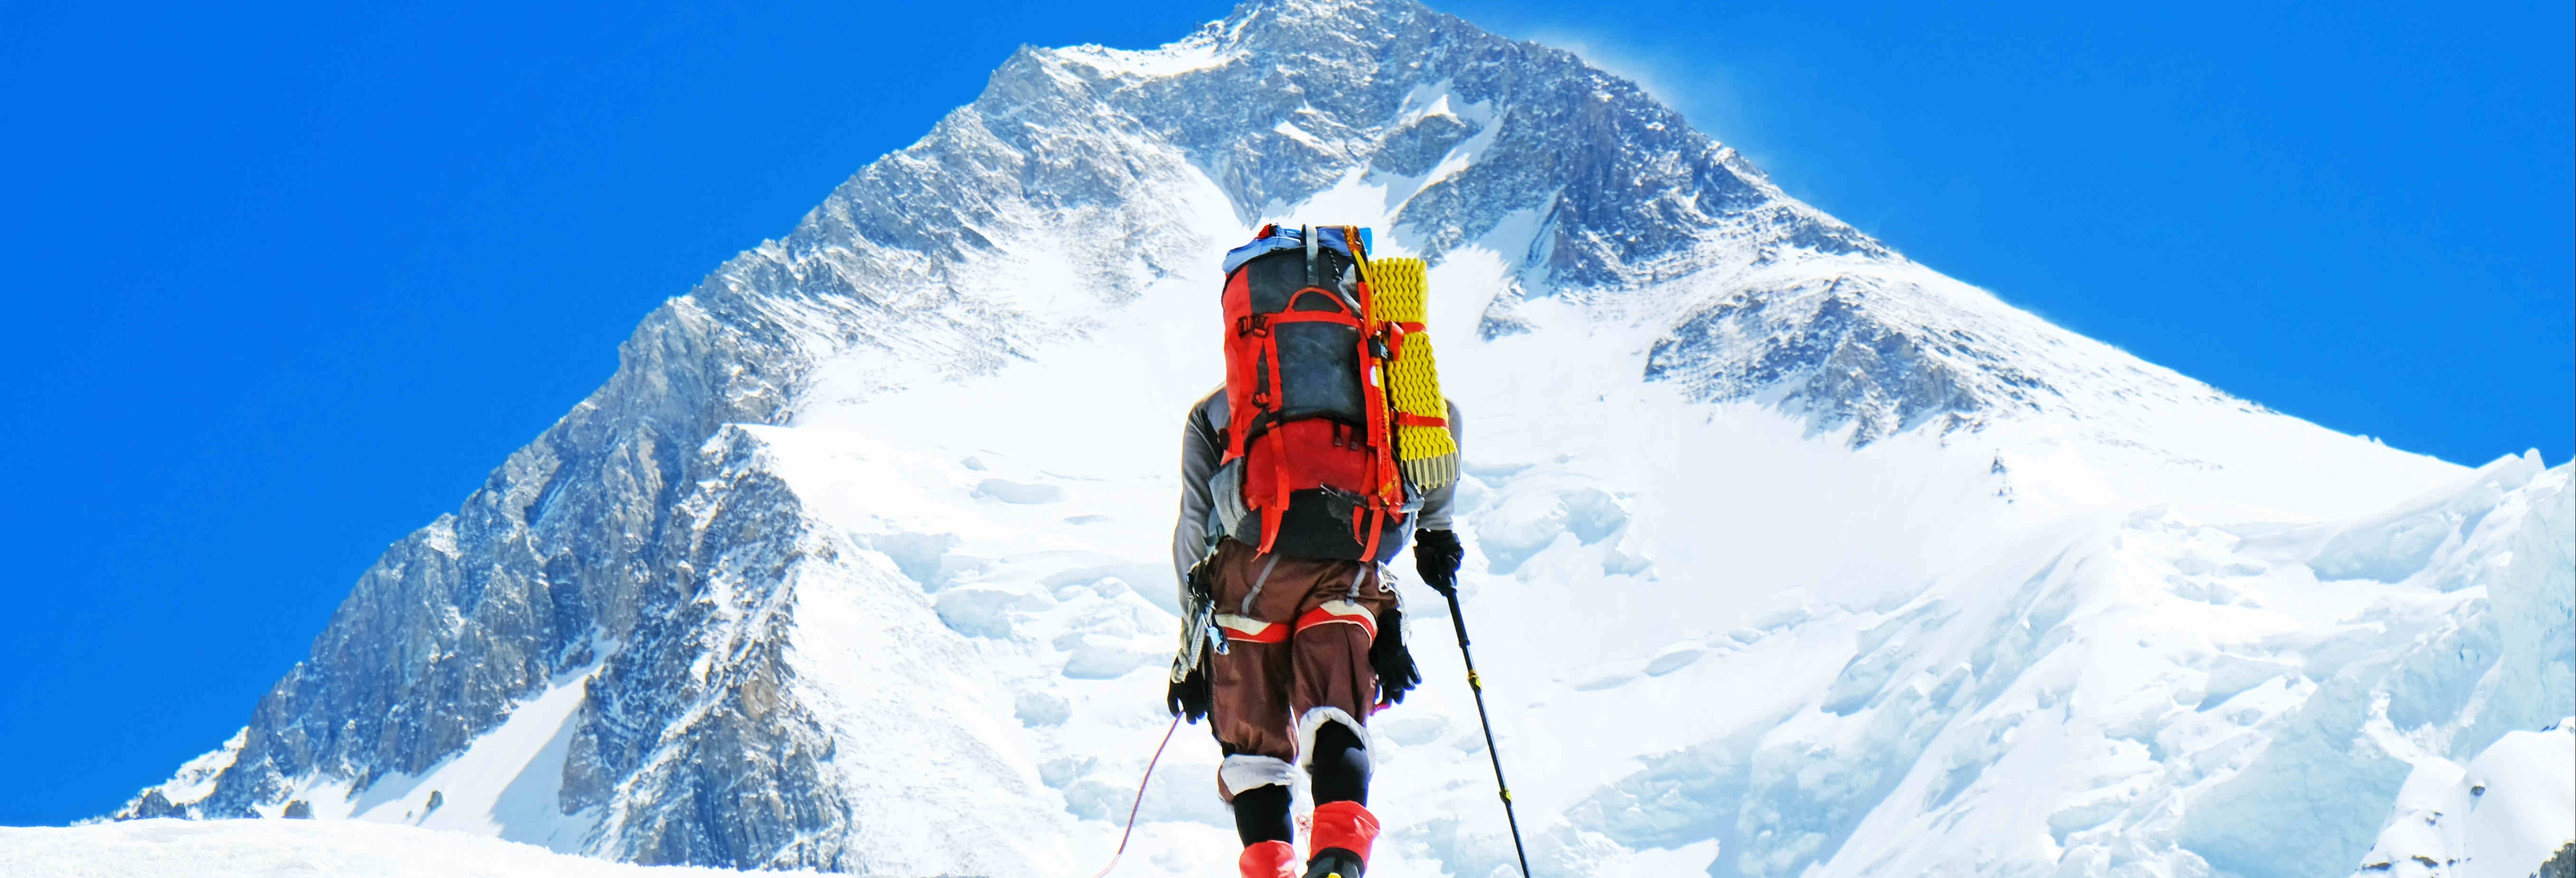 Expedição ao topo do monte Everest